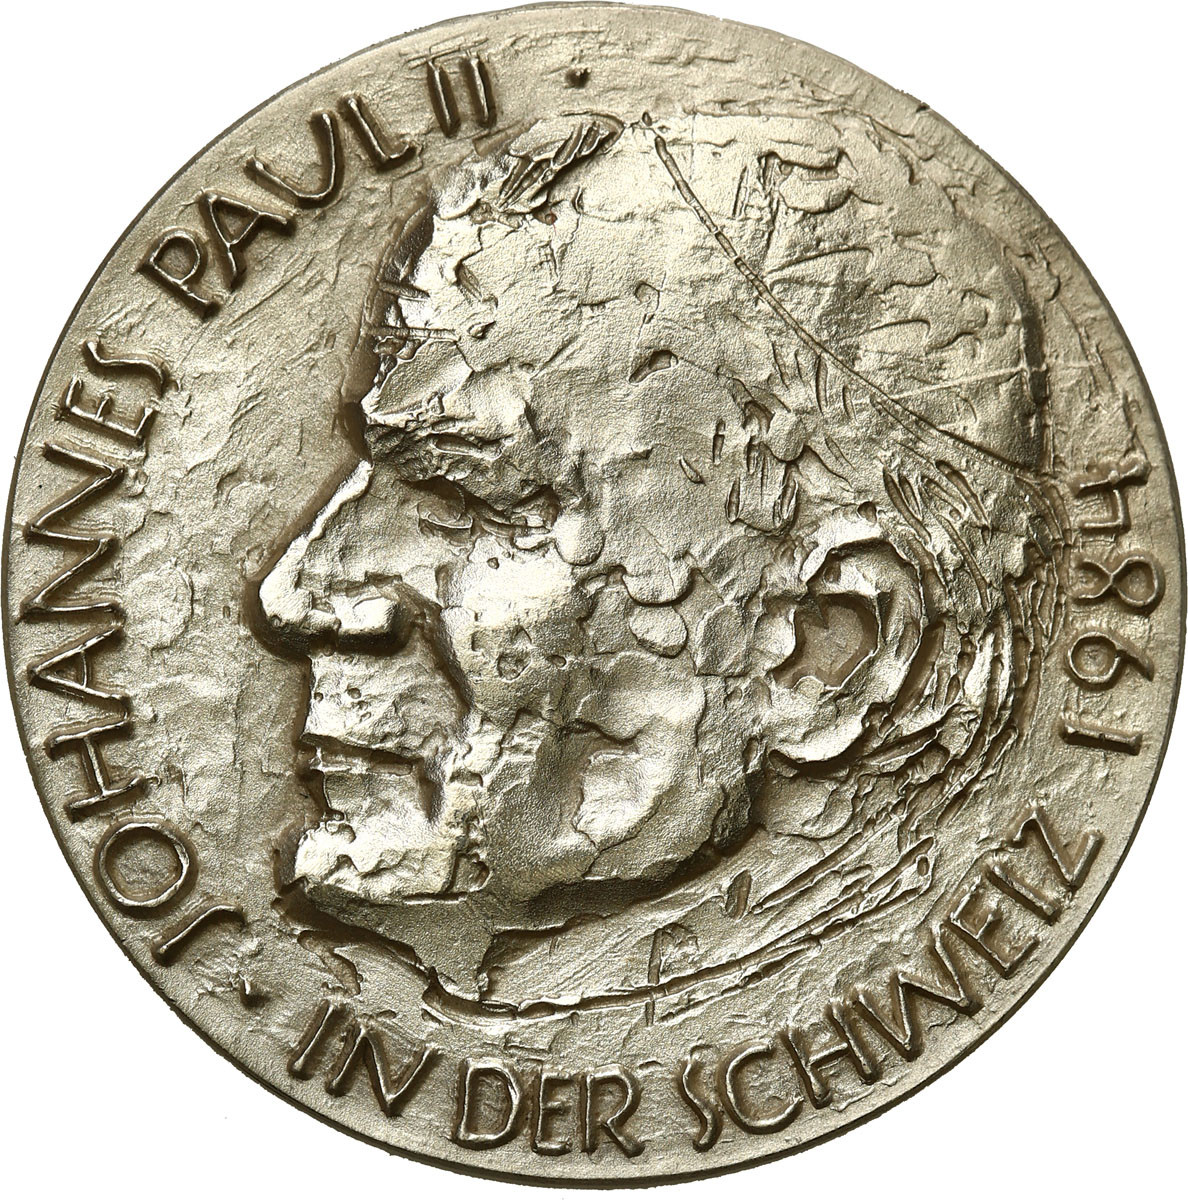 Szwajcaria, Luzern. Medal 1984 - Jan Paweł II  Szwajcarii, srebro